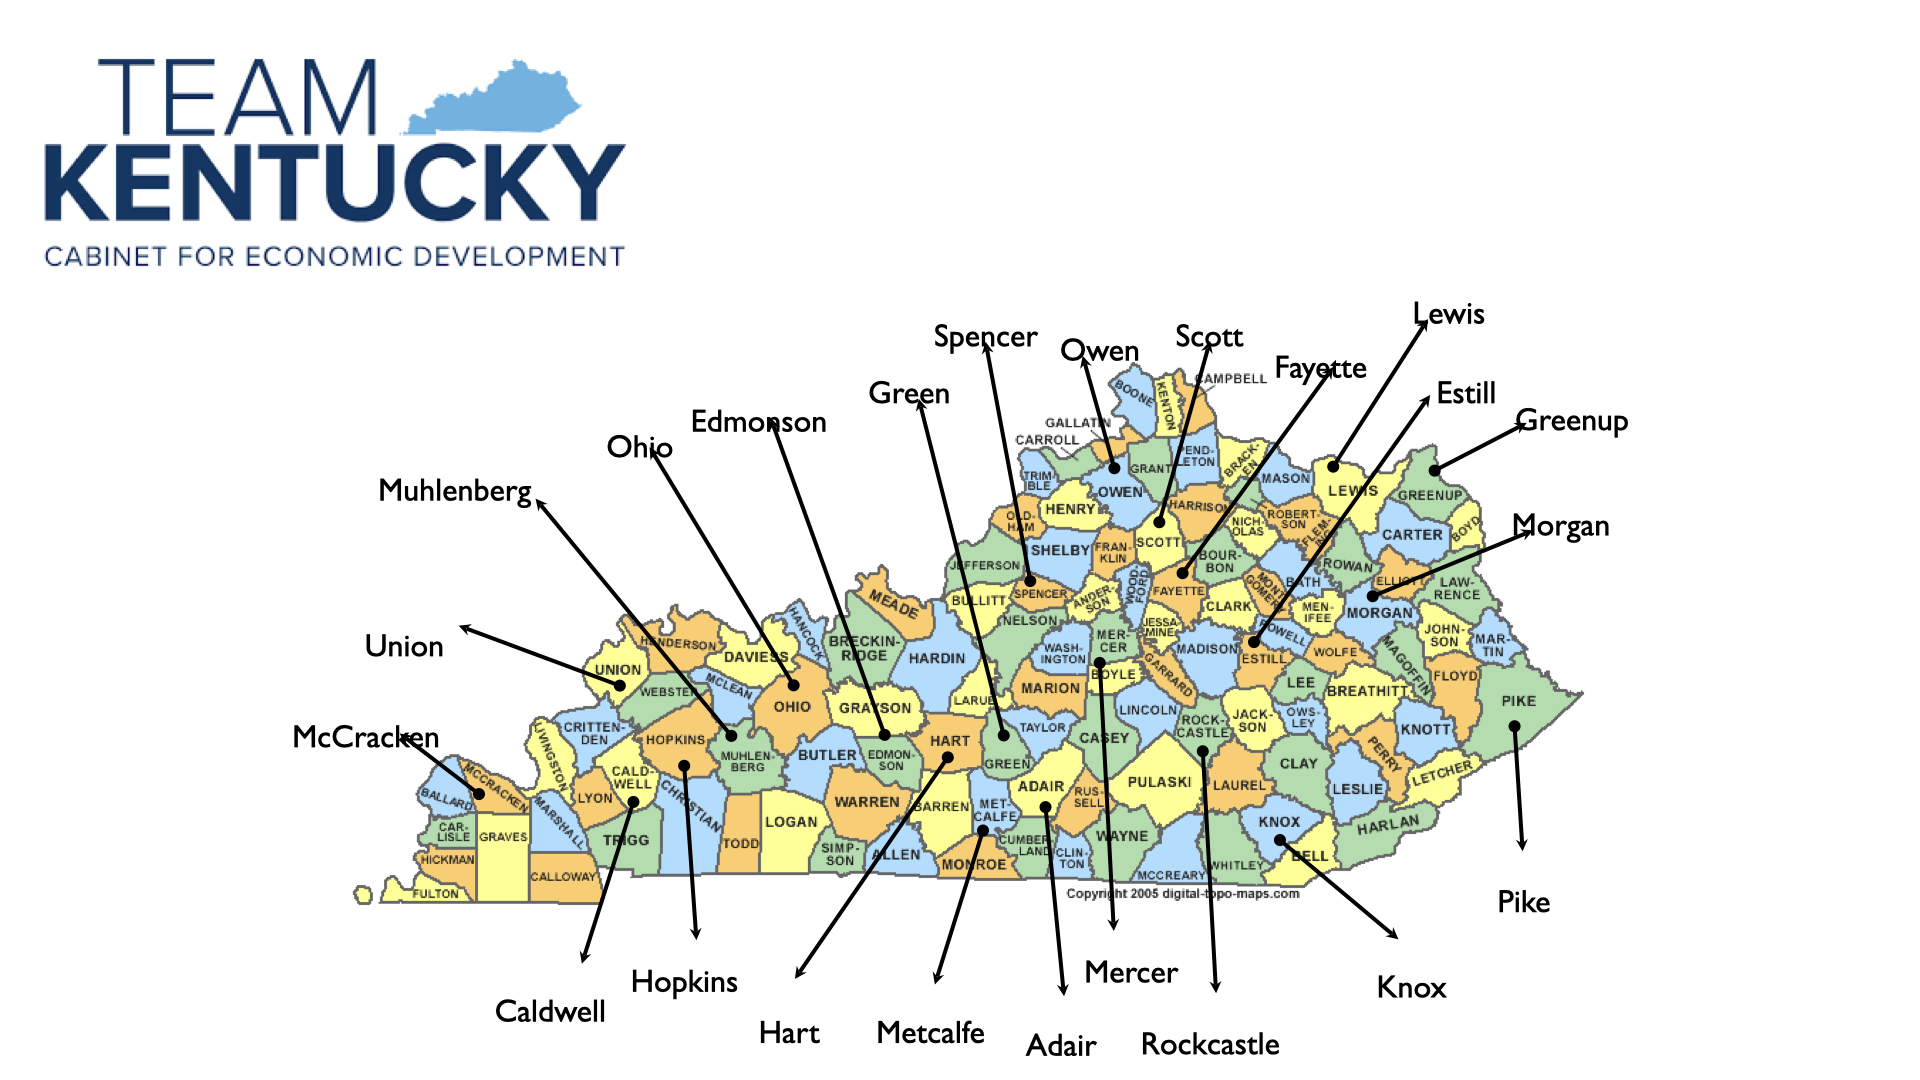 1996-1999: Globalization Challenges Met Across Kentucky